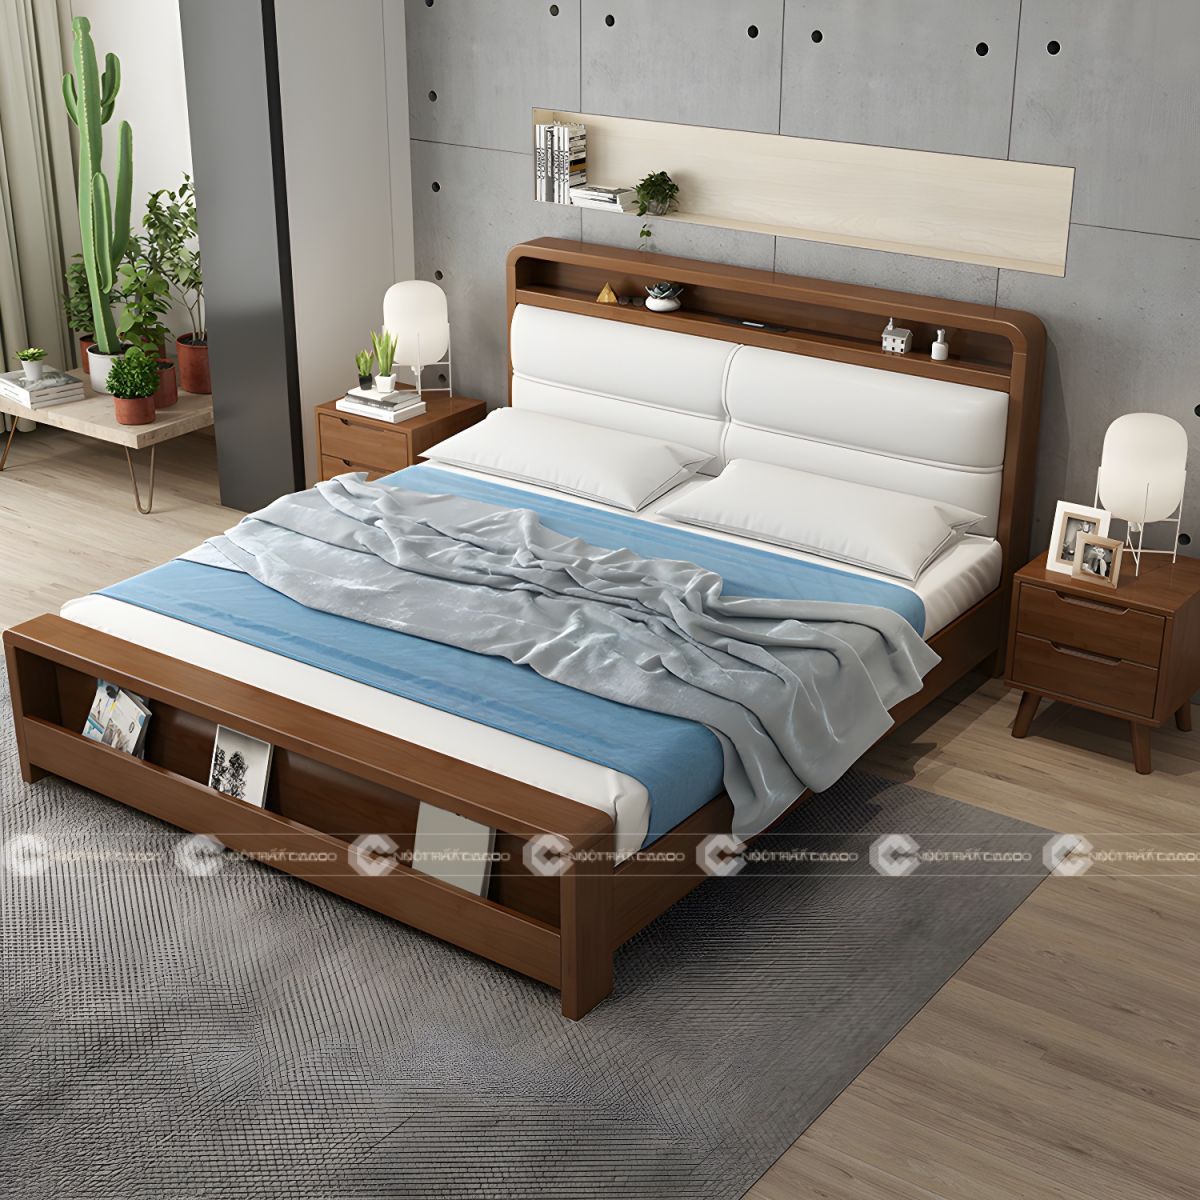 Giường ngủ gỗ tự nhiên chân thấp tối ưu diện tích